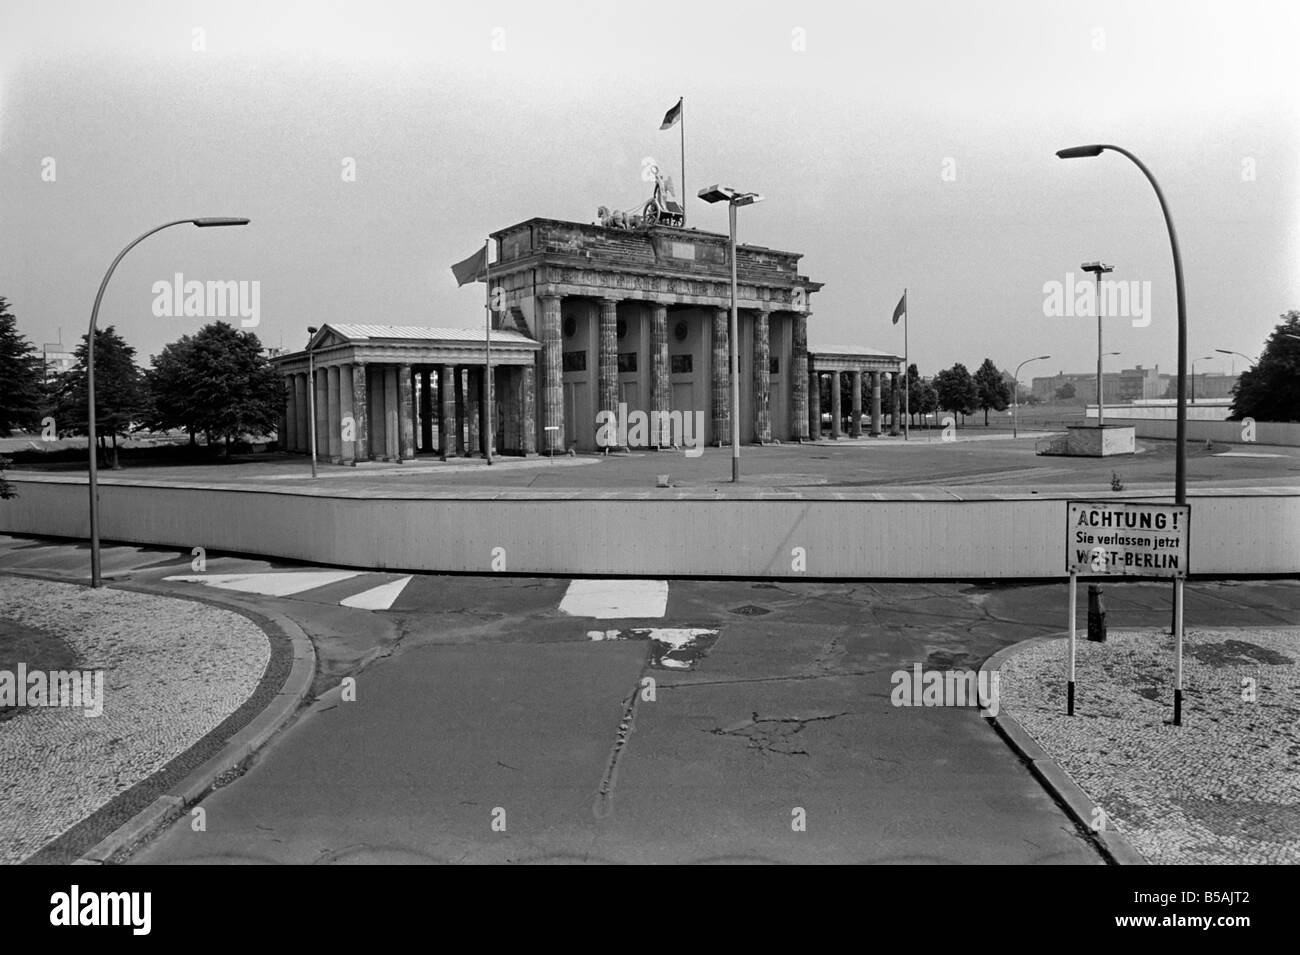 Blick auf die Berliner Mauer am Brandenburger Tor.; Die Berliner Mauer war  eine Barriere trennt West-Berlin aus Ost-Berlin und dem Rest der DDR. Juni  1980 Stockfotografie - Alamy